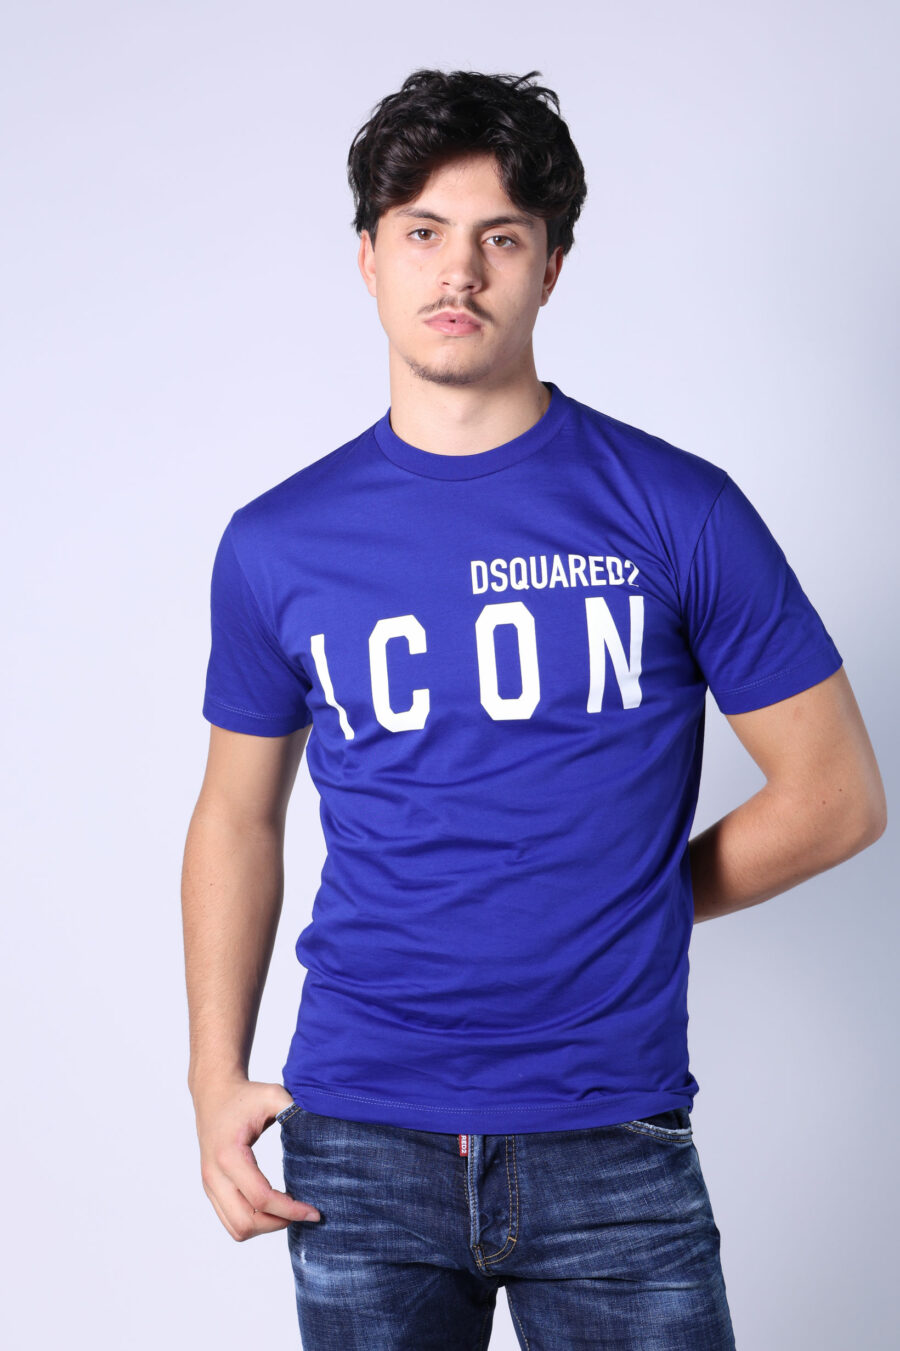 T-shirt azul elétrico com maxilogo "ícone" branco - Untitled Catalog 05399